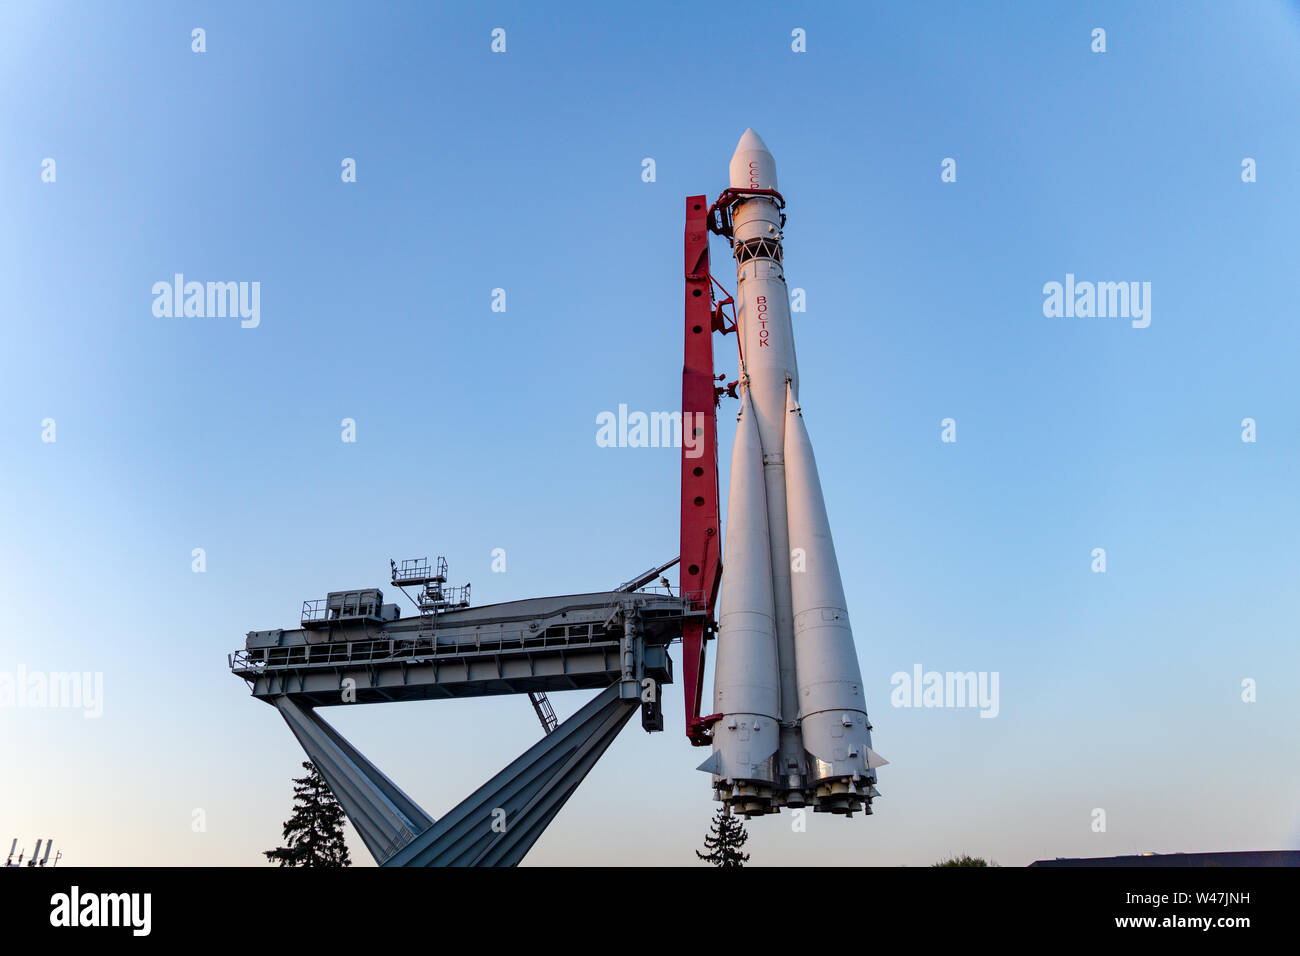 Maßstab der Reproduktion von Wostok 1 Rakete von Yuri Gagarin im ersten Raumfahrt verwendet, Allrussischen Ausstellungszentrum, Moskau, Russland. Stockfoto